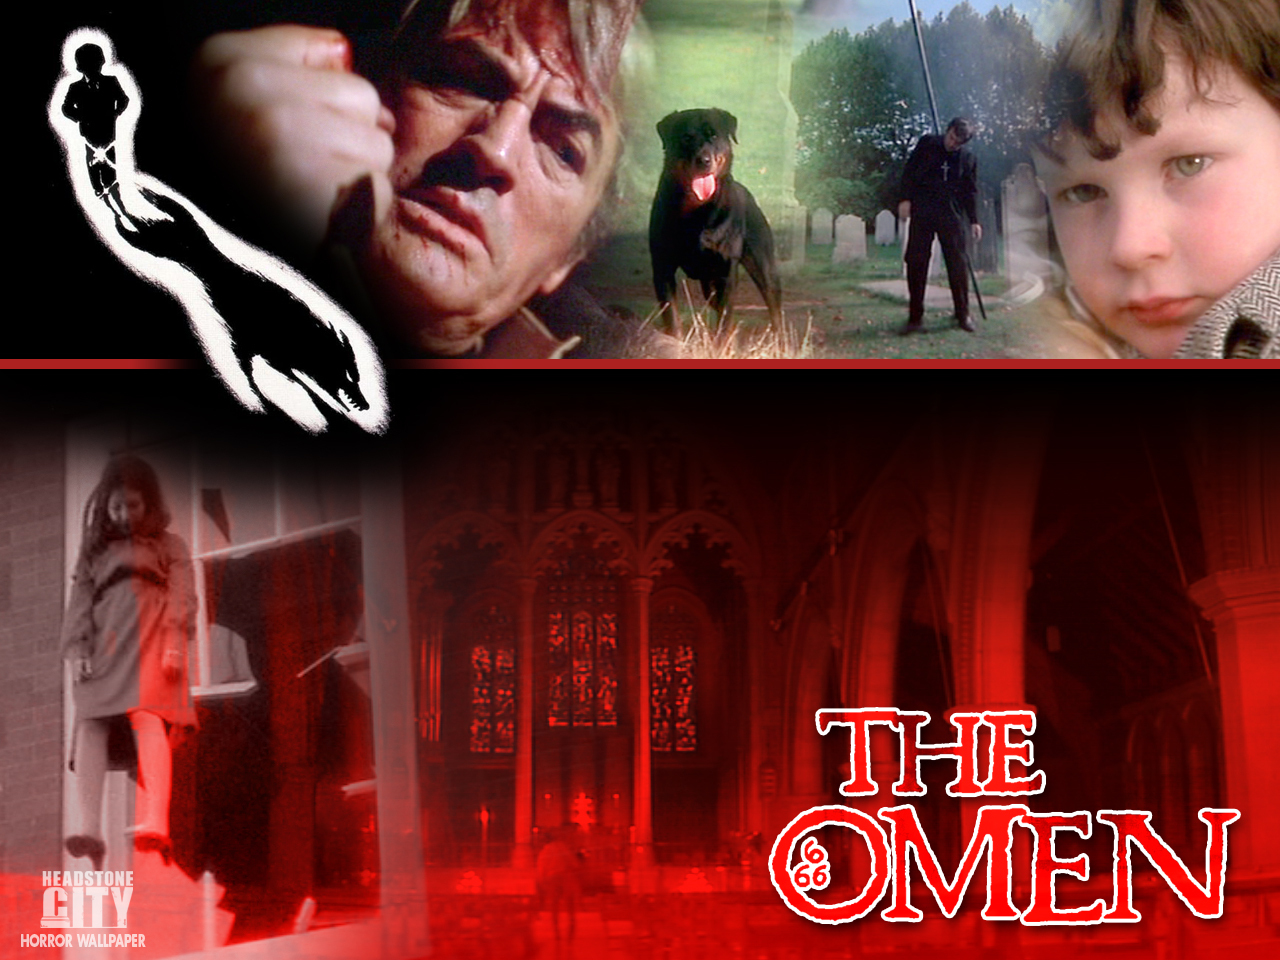 The-Omen-70s-horror-25907080-1280-960.jpg